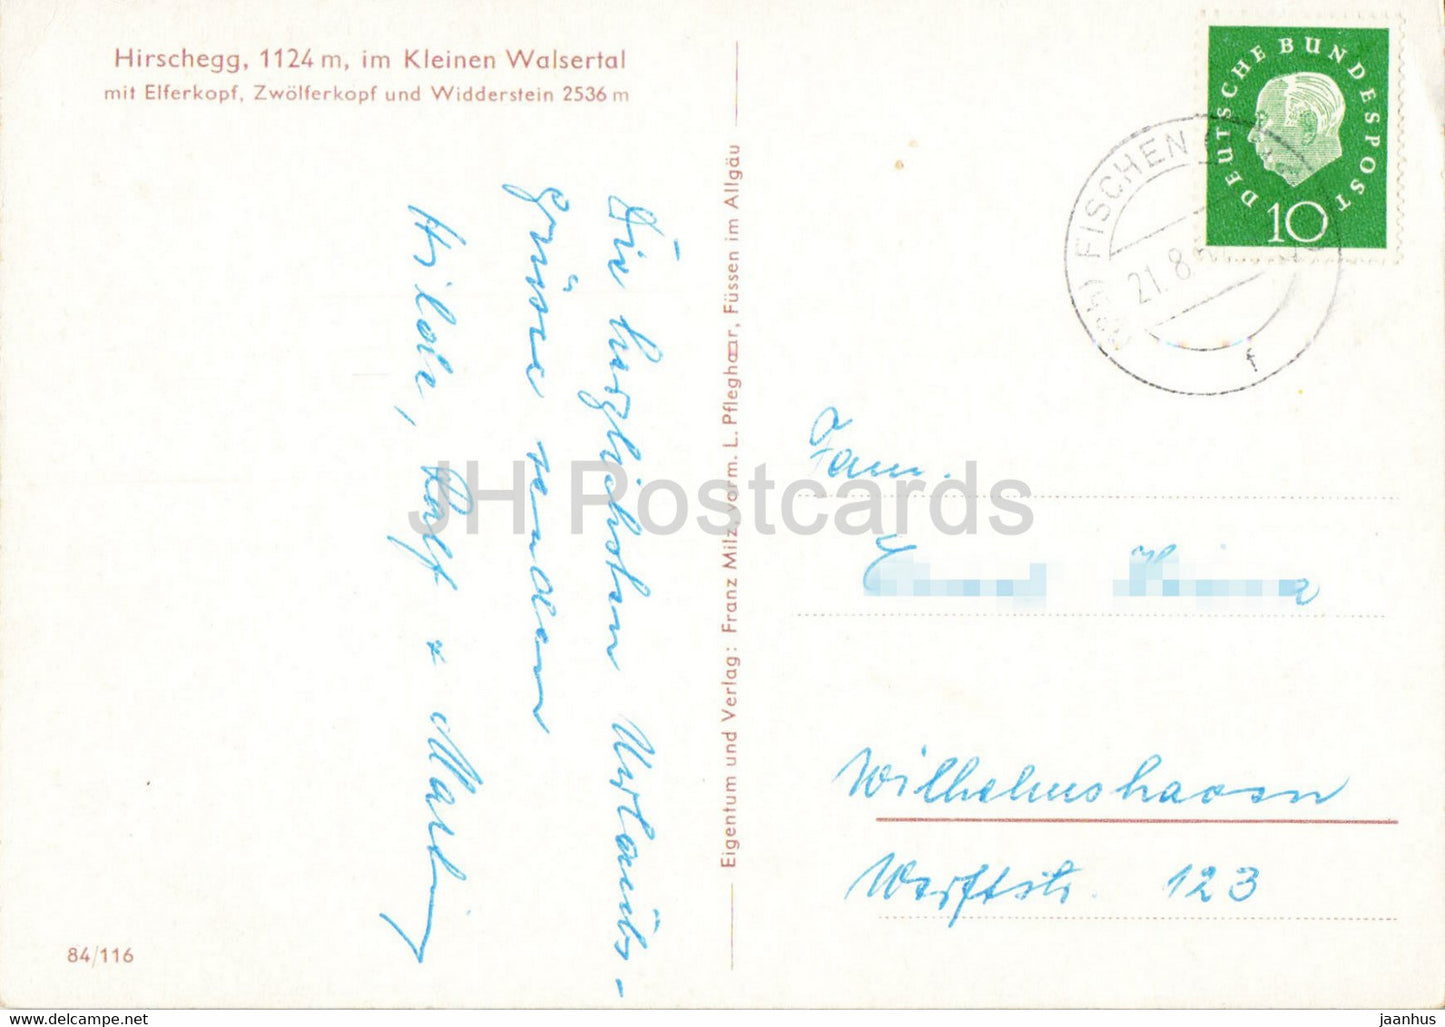 Hirschegg 1124 m - im Kleinen Walsertal - Elferkopf - Zwolferkopf - Widderstein - carte postale ancienne - Autriche - d'occasion